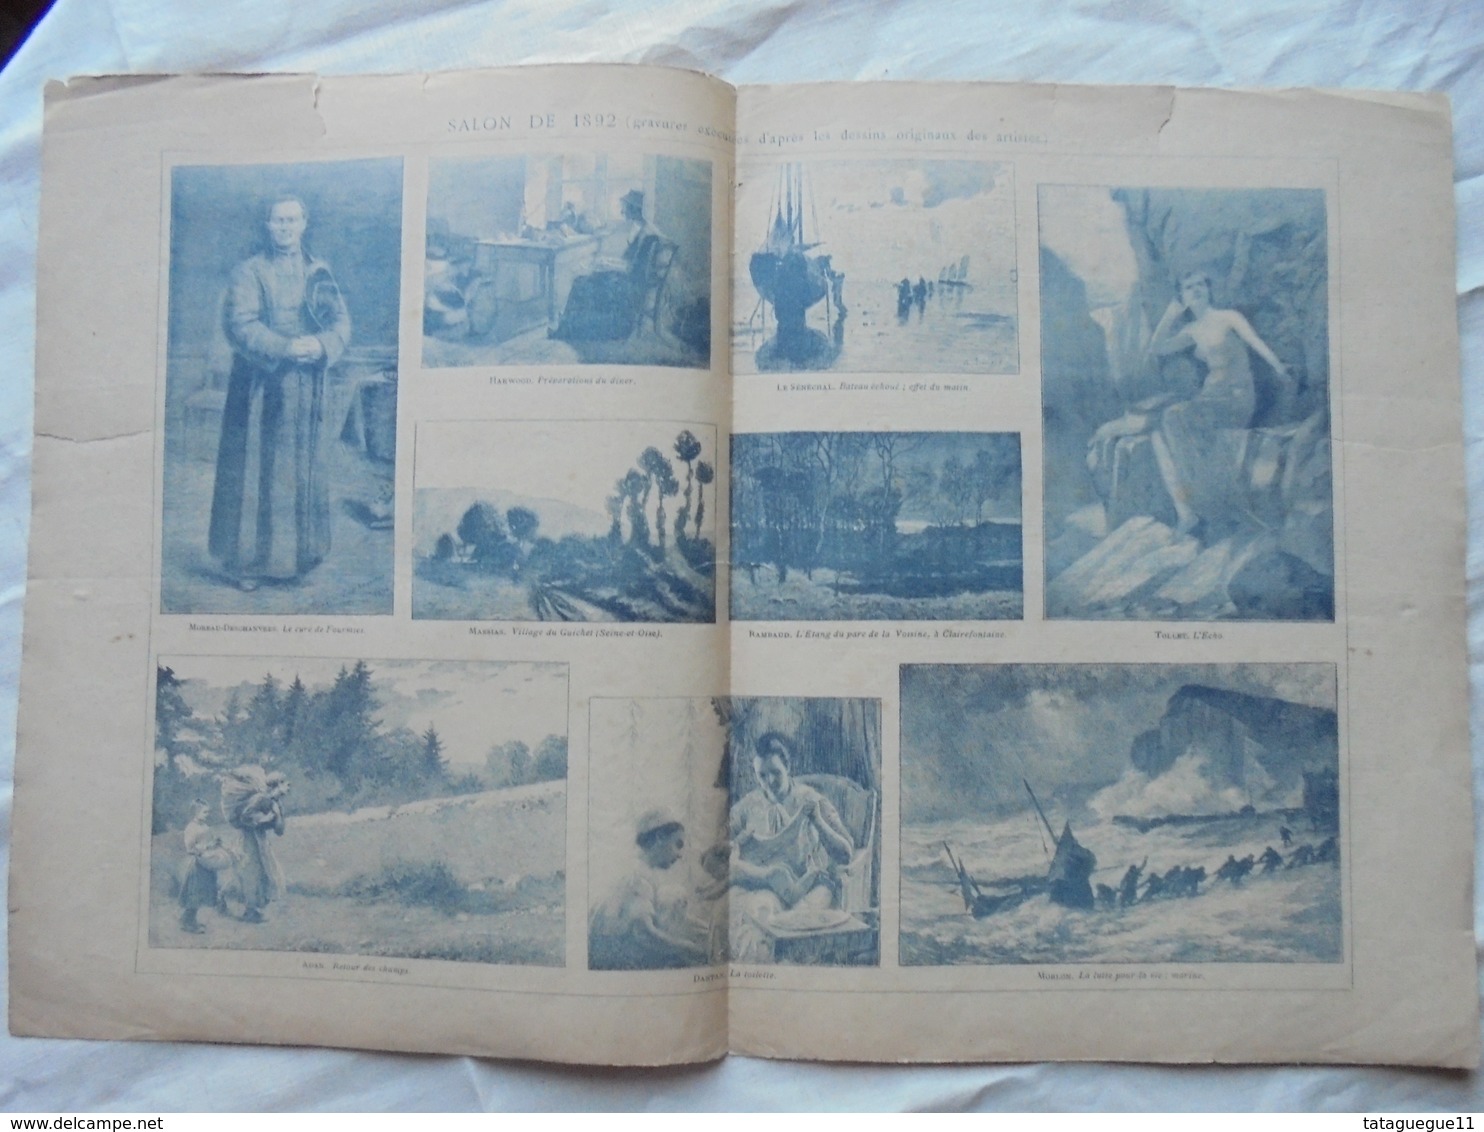 Ancien - Double Page Supplément Anales Politiques Et Littéraires N° 462 5/1892 - Magazines & Catalogs